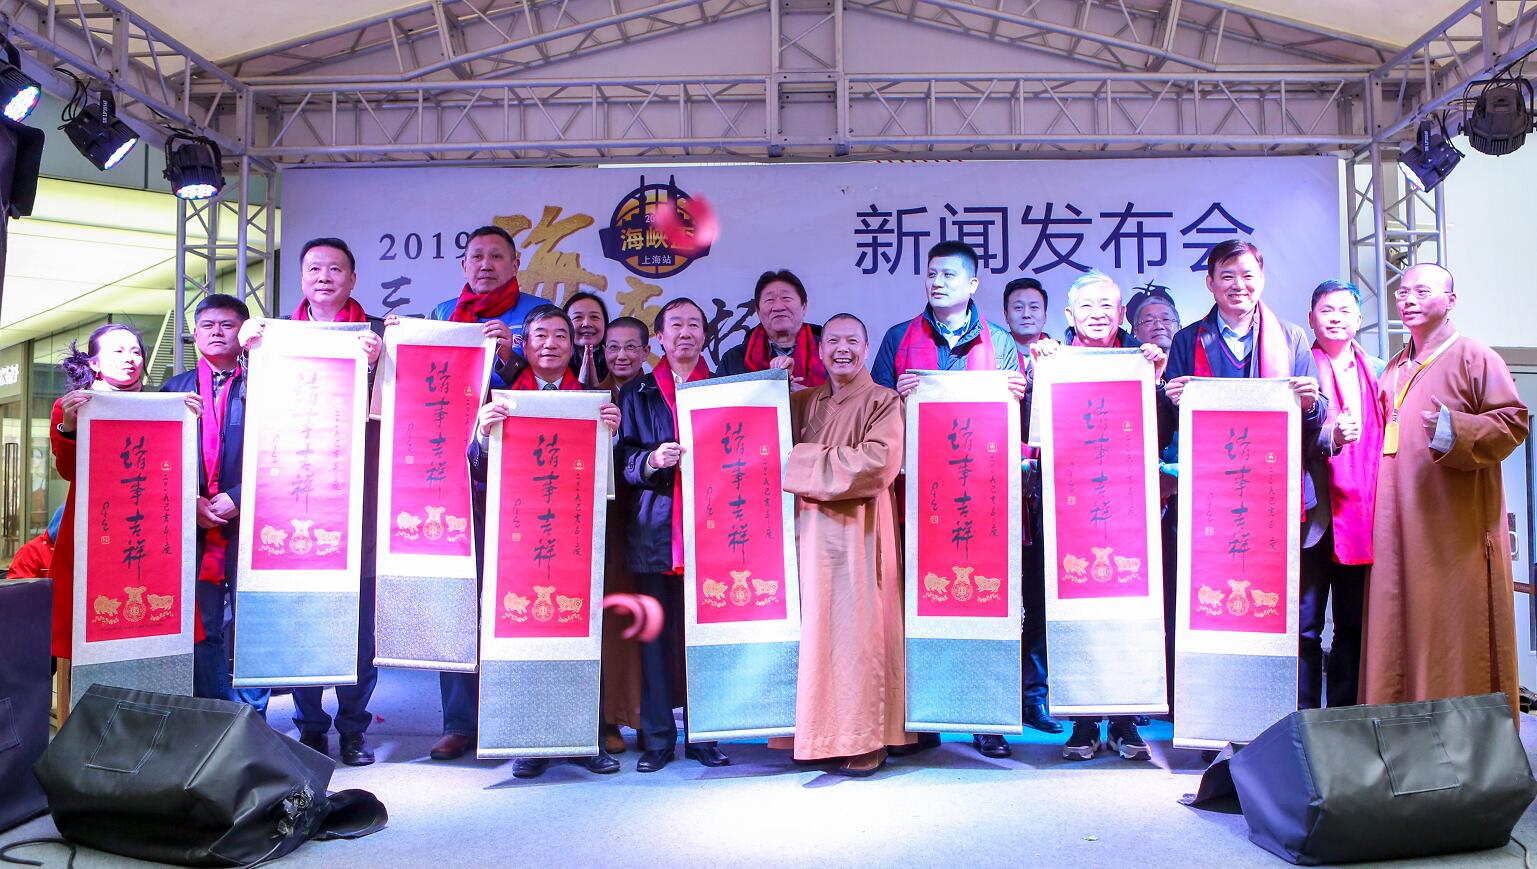 3月22日A首屆u三好海峽杯v兩岸中學生籃球邀請賽新聞發佈會在上海日月光中心舉行 